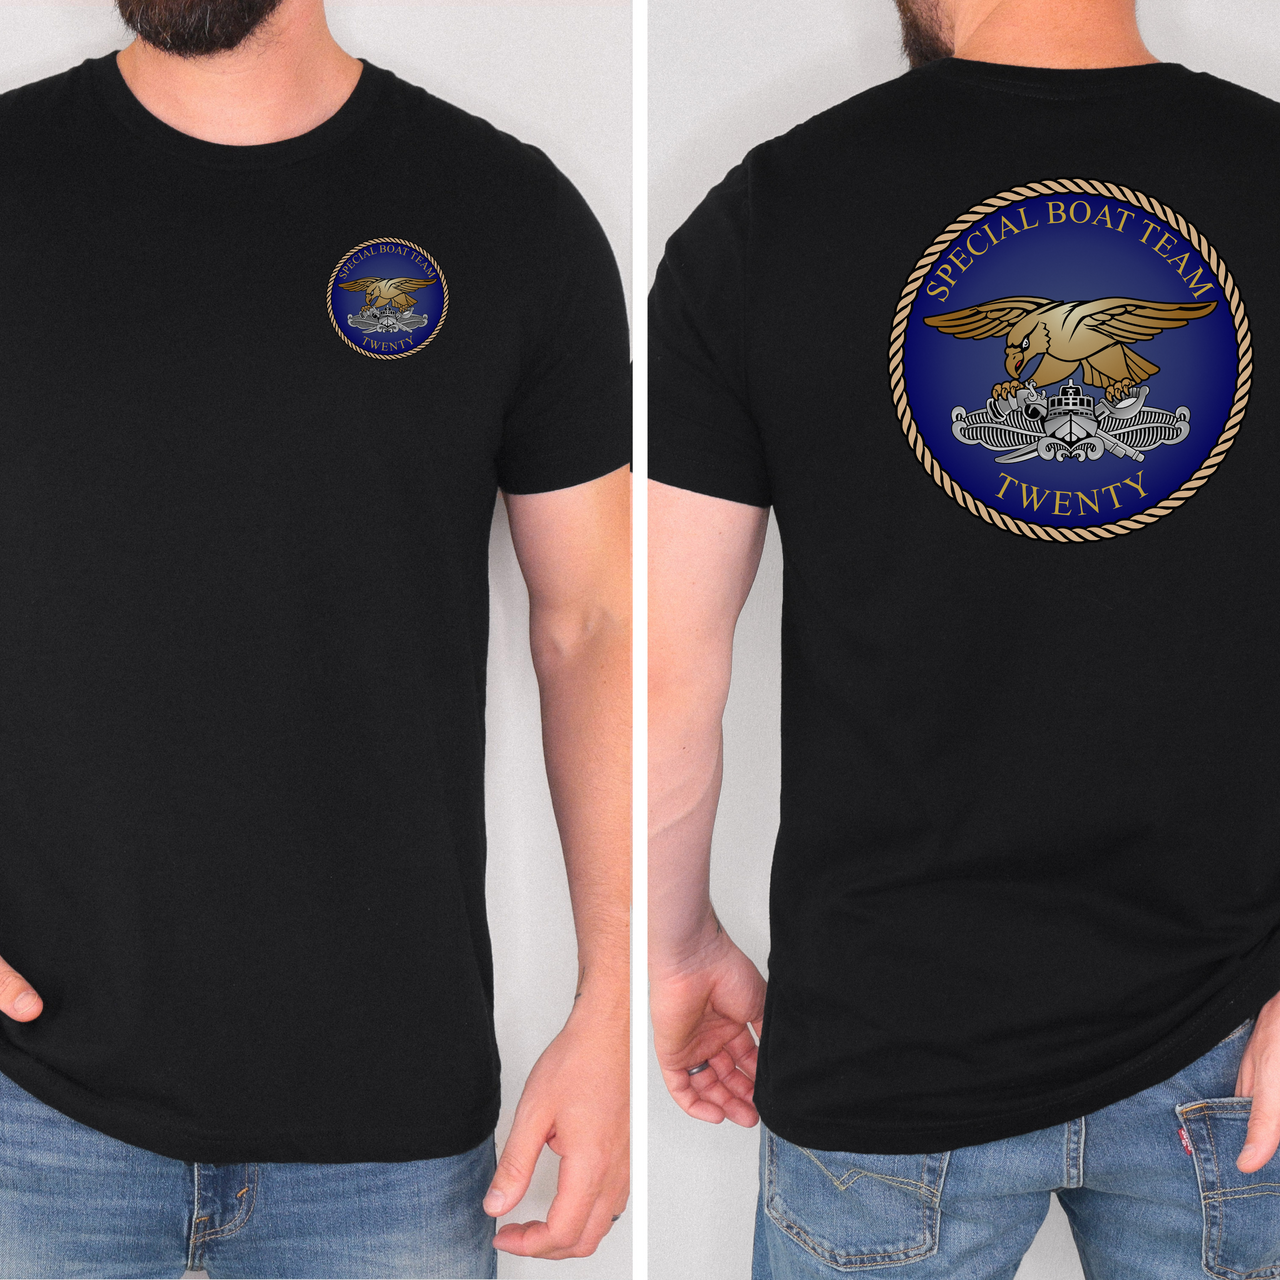 Special Boat Team 20 v1 - SBT 20 T-Shirt (Color)